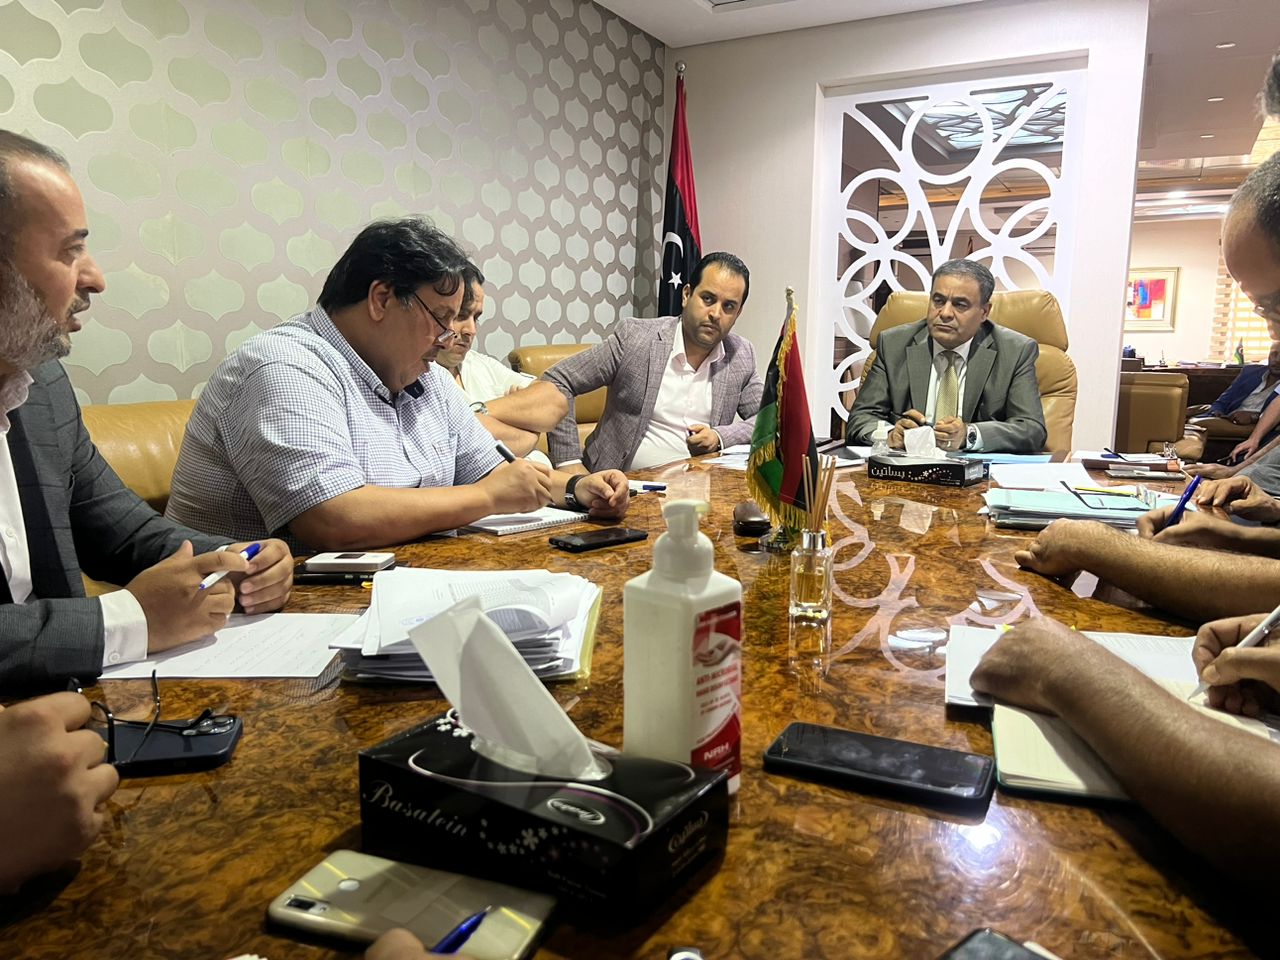 وزير المواصلات بحكومة الوحدة الوطنية الأستاذ / محمد الشهوبي يعقد إجتماعاً بمقر جهاز تنفيذ مشروعات المواصلات